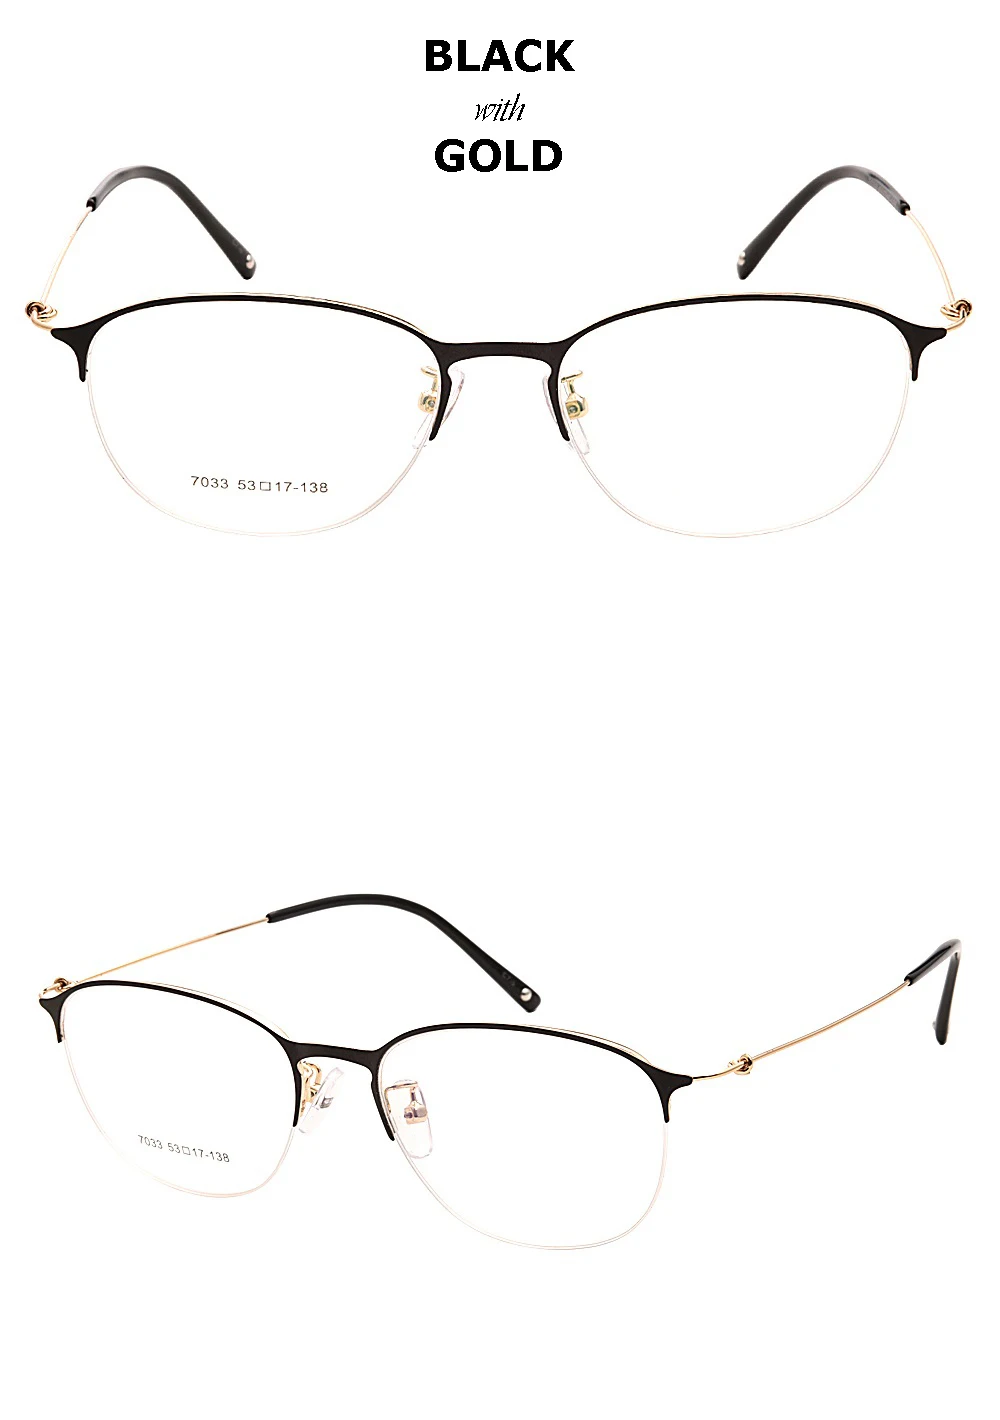 Yi Цзян Нань бренд Винтаж Круглый супер легкий дизайнерские очки кадров модные женские туфли очки Для мужчин очки кадры круглый